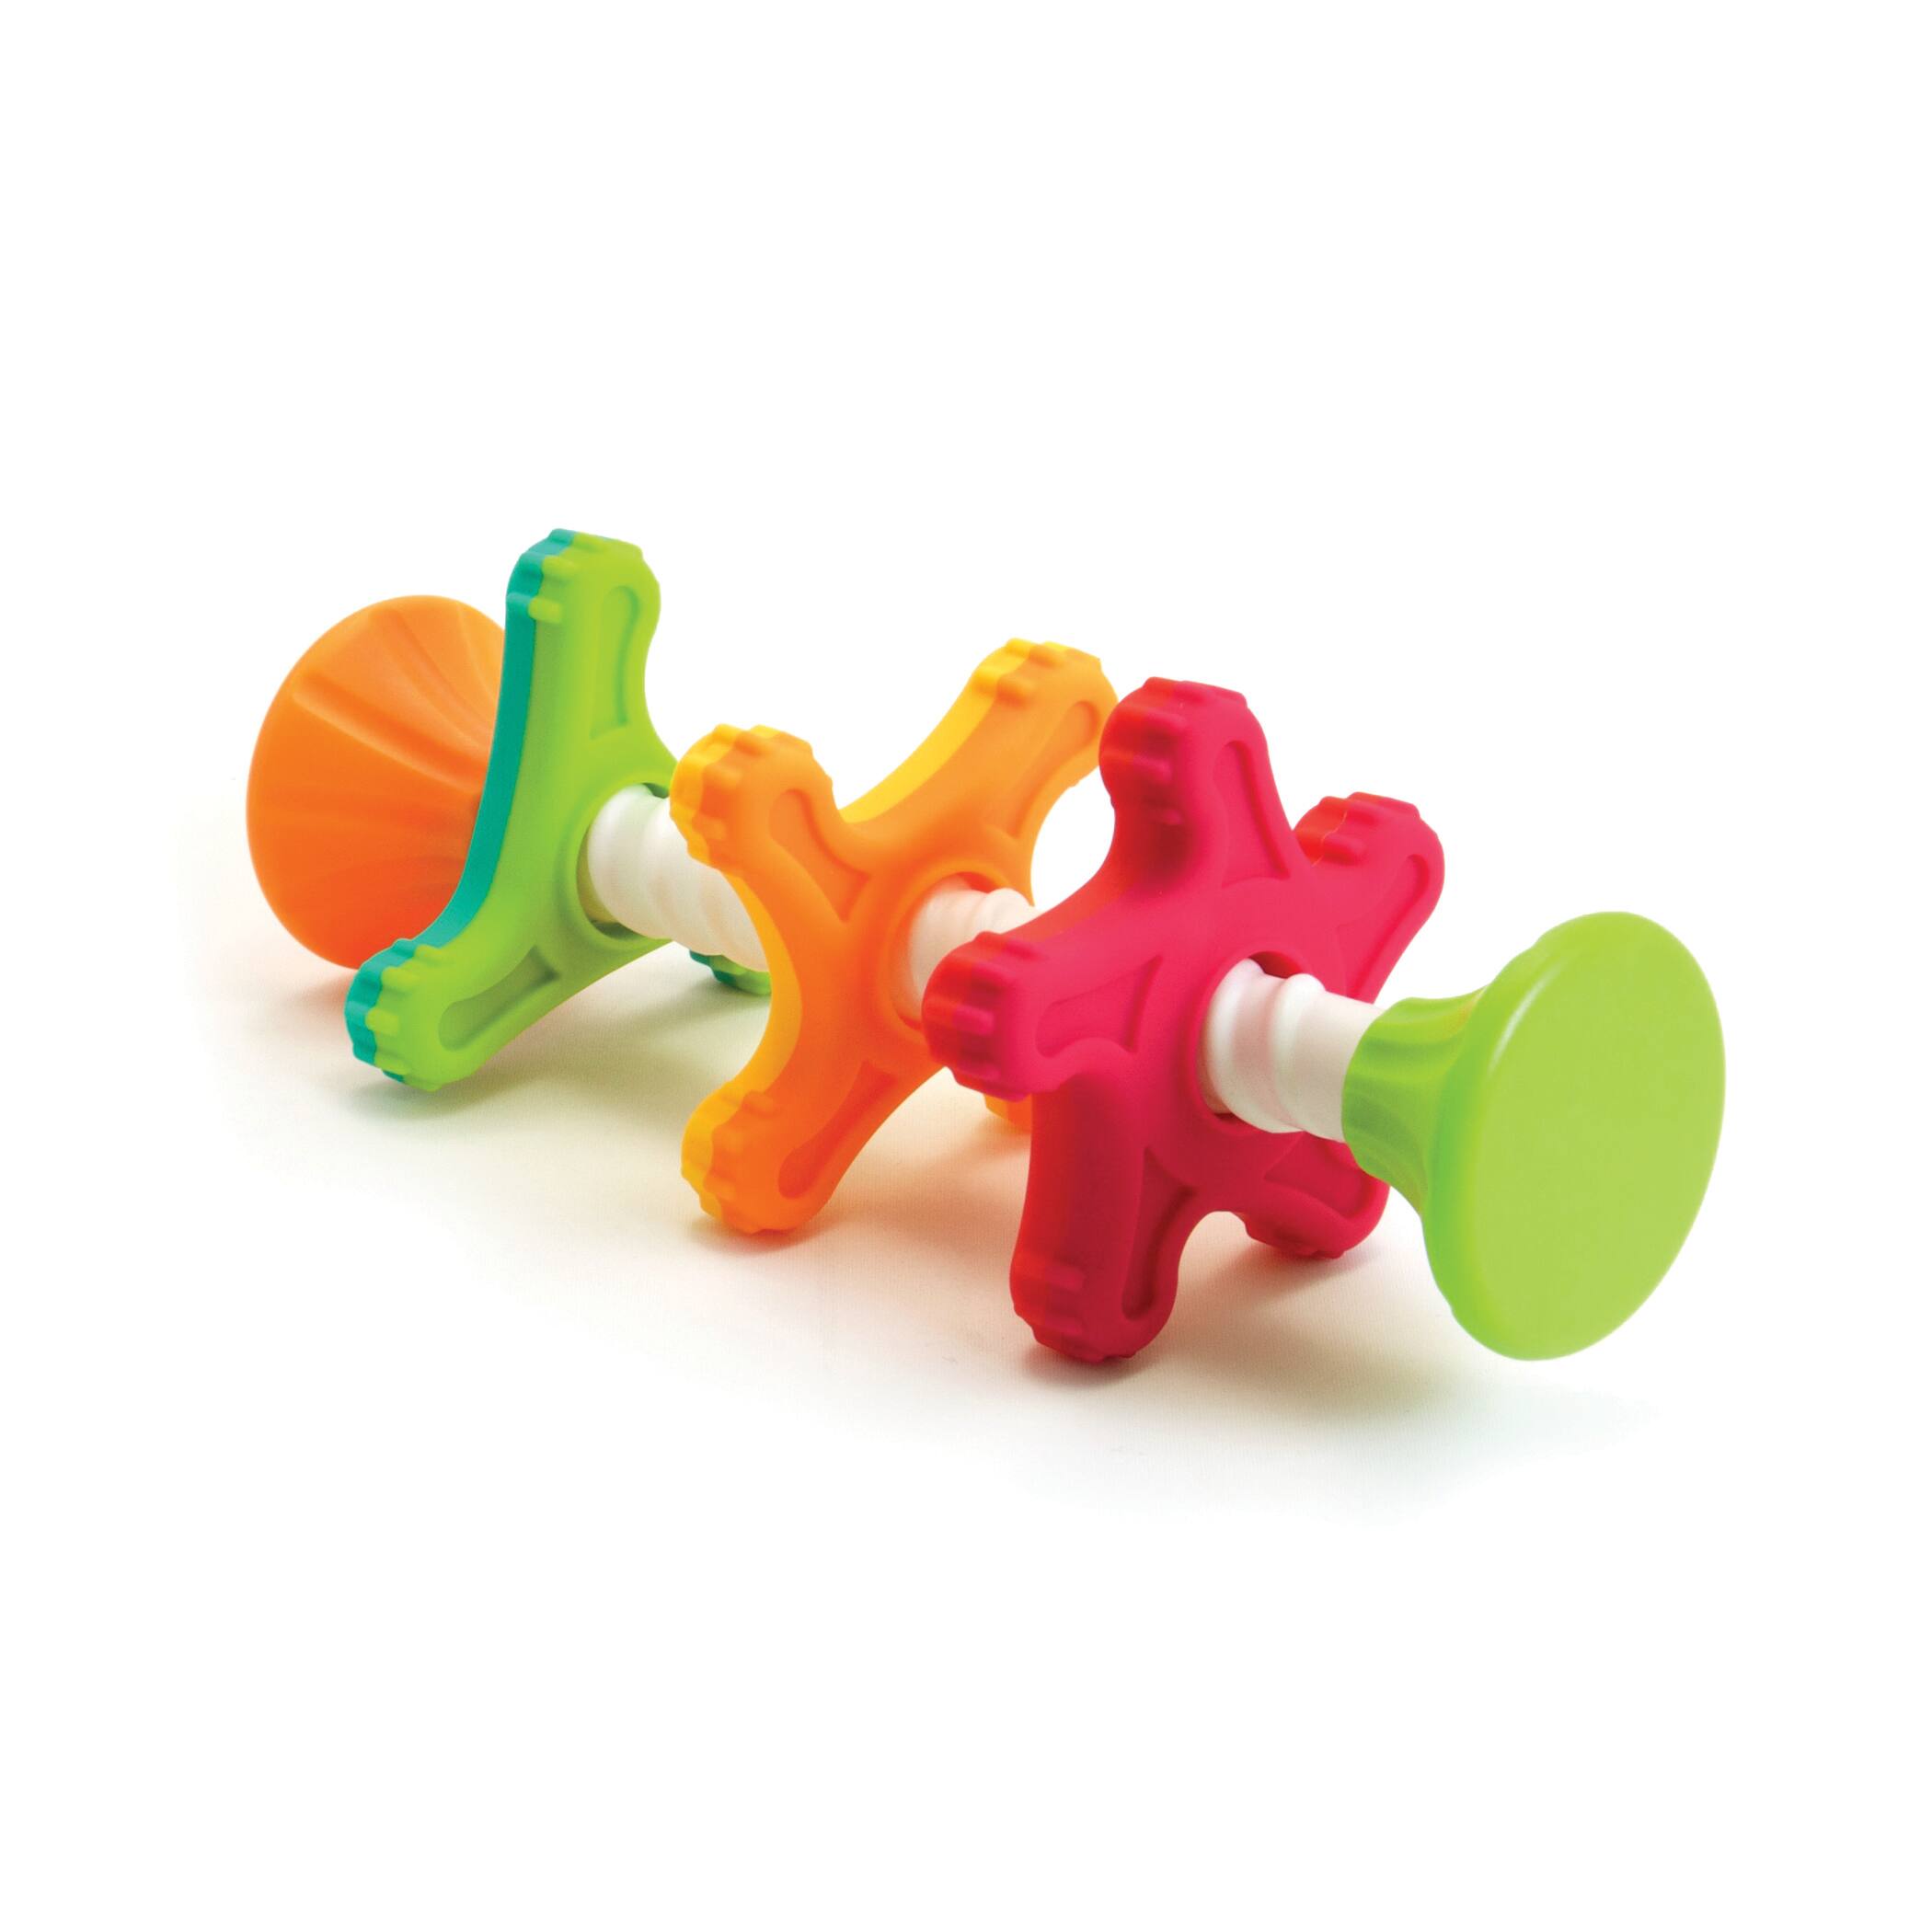 MiniSpinny Sensory Toy